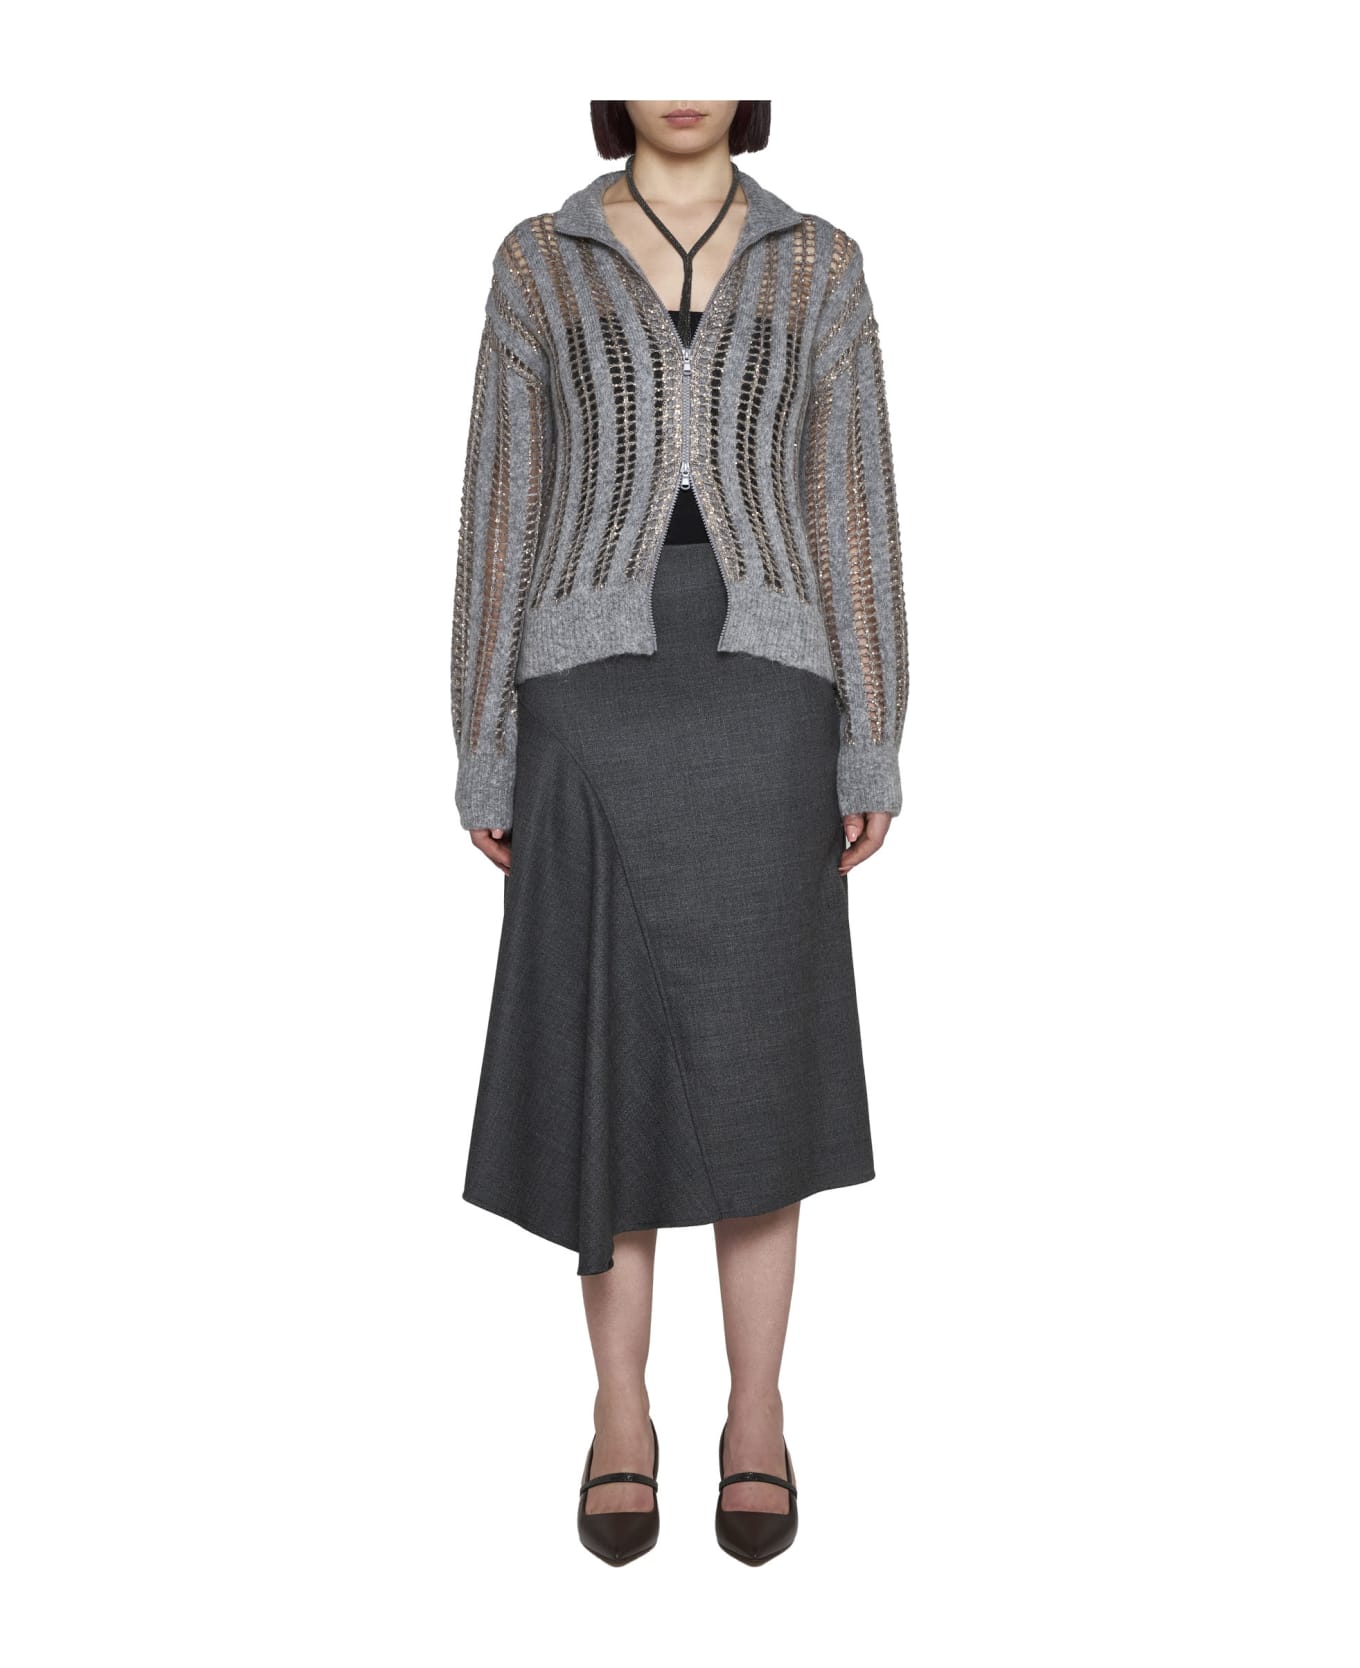 Brunello Cucinelli Skirt - Grey スカート